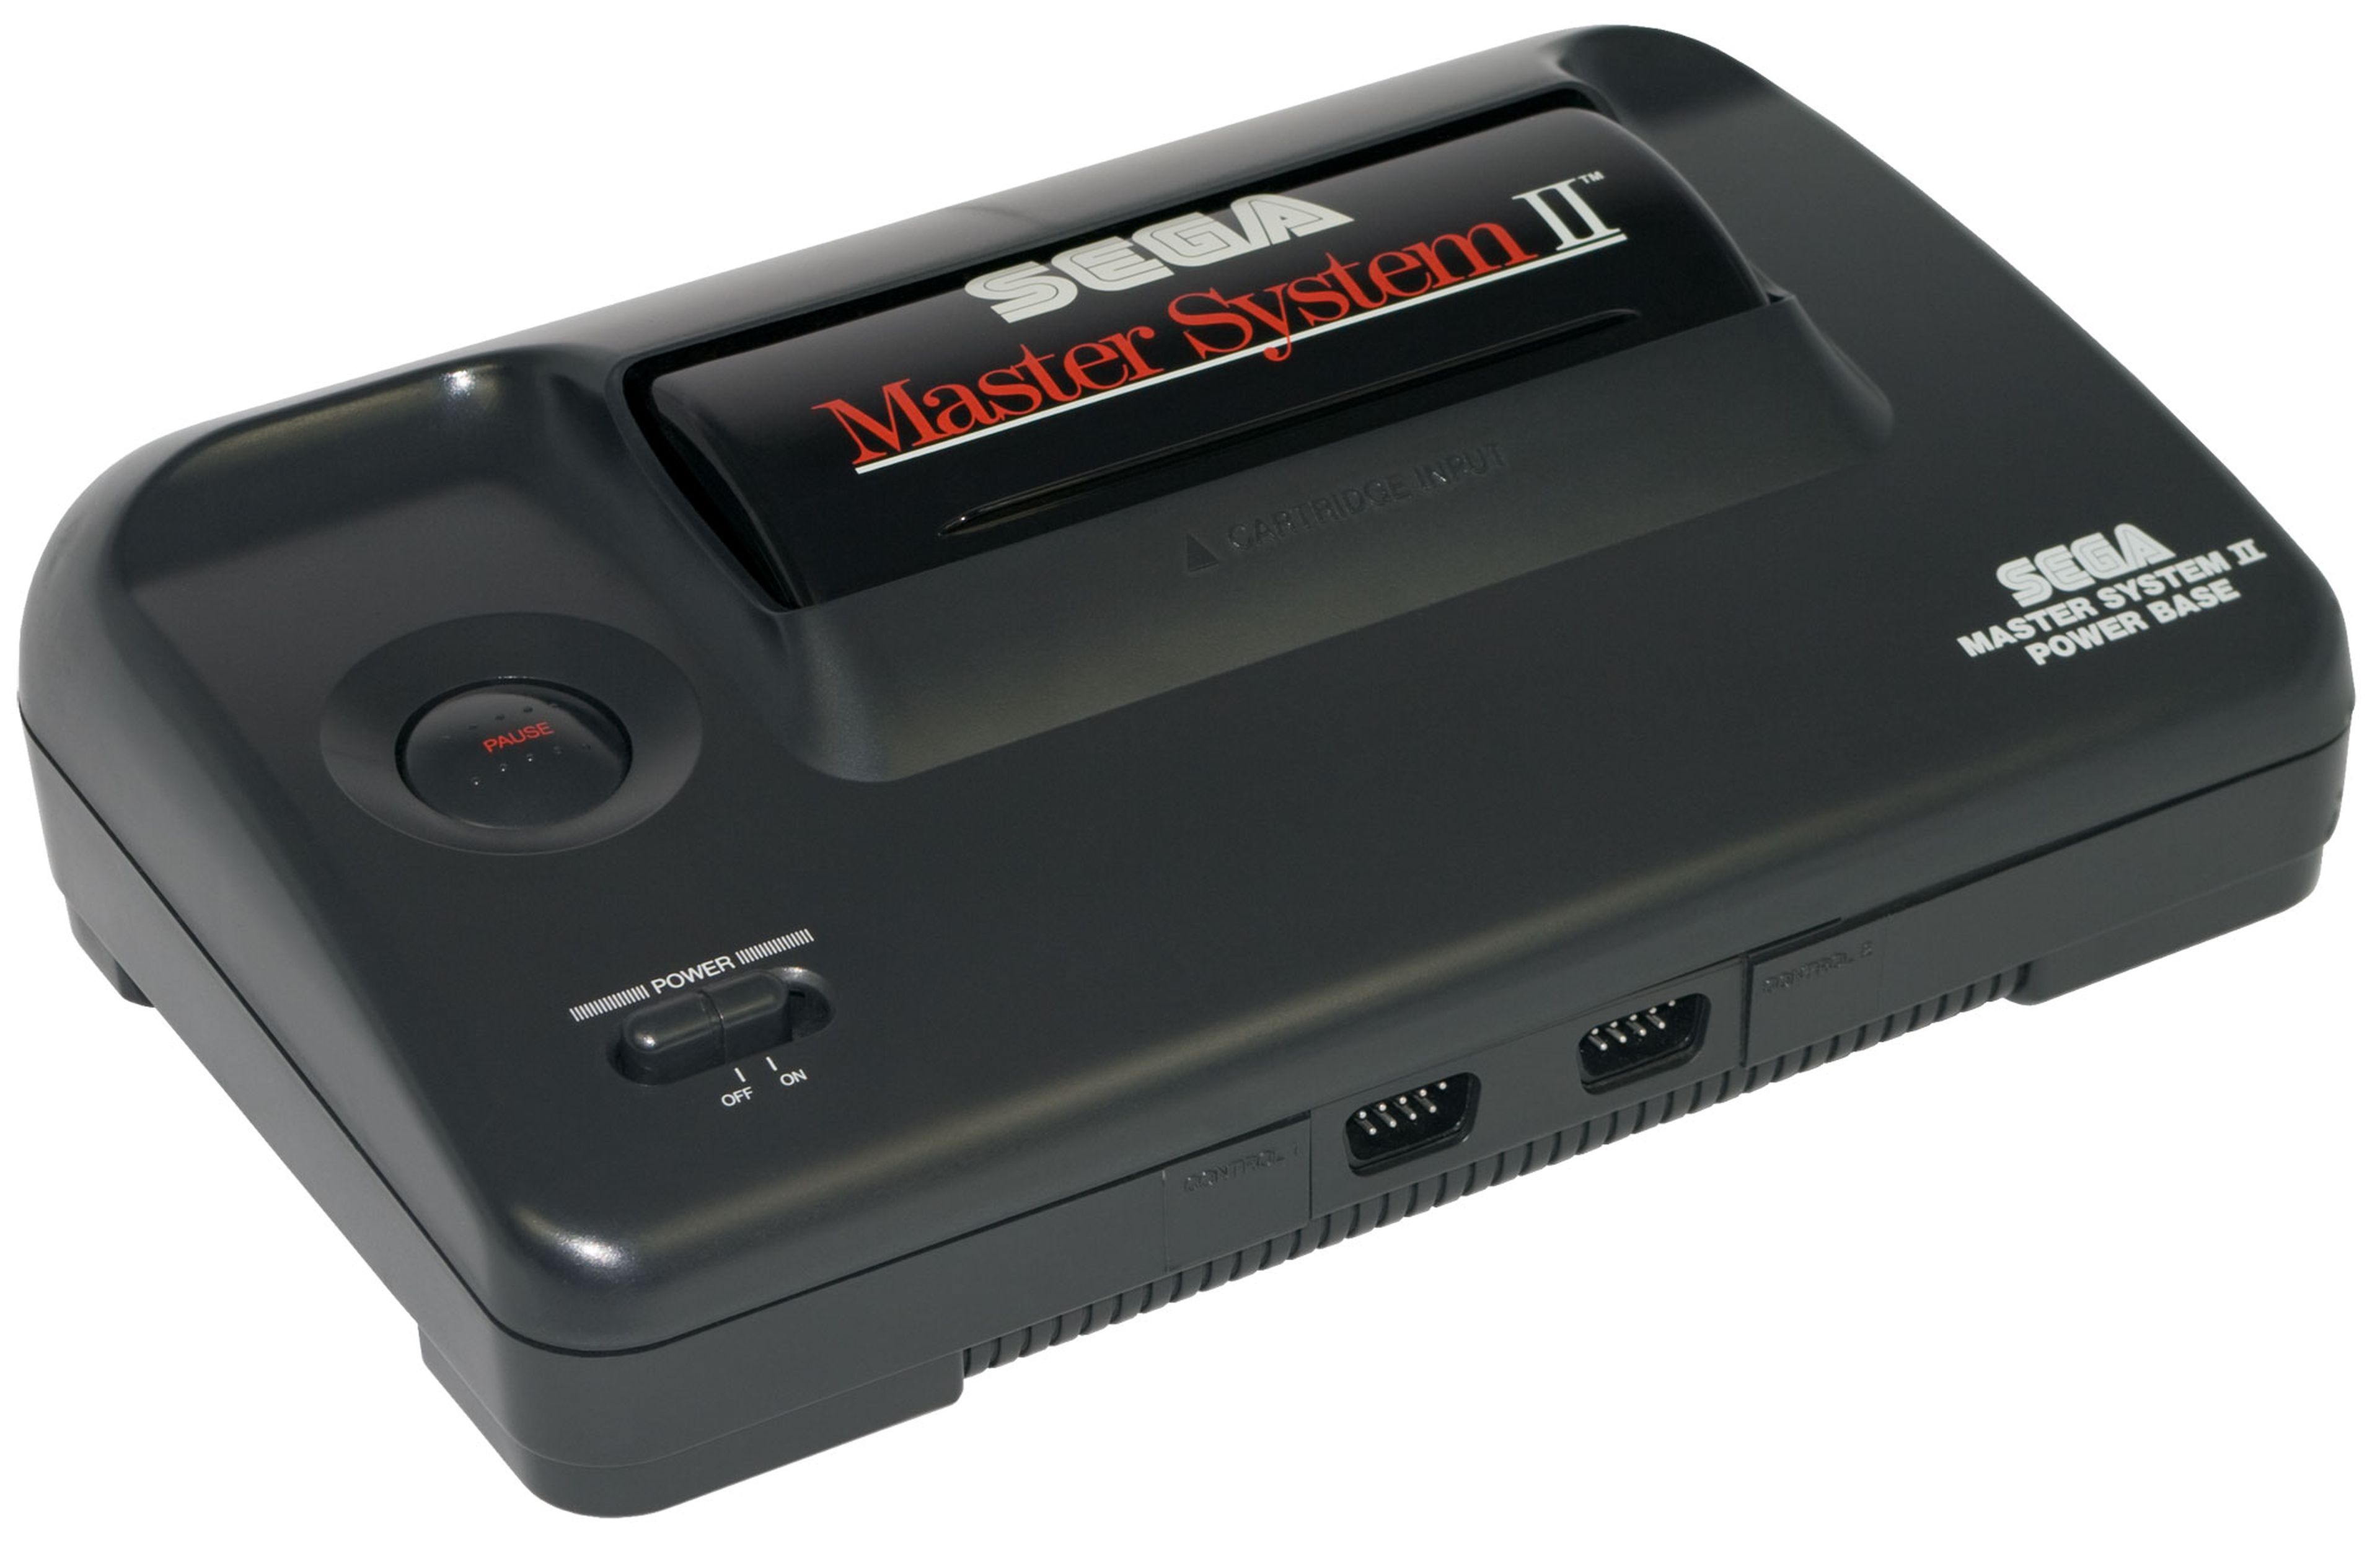 Hubo varios modelo de Master System. Incluso se lanzó uno sin cables, la Super Compact, que incluía los botones en la carcasa (como una portátil) y enviaba la señal a la tele mediante una antena. Hubo una Super Compact rosa, llamada Master System Girl.